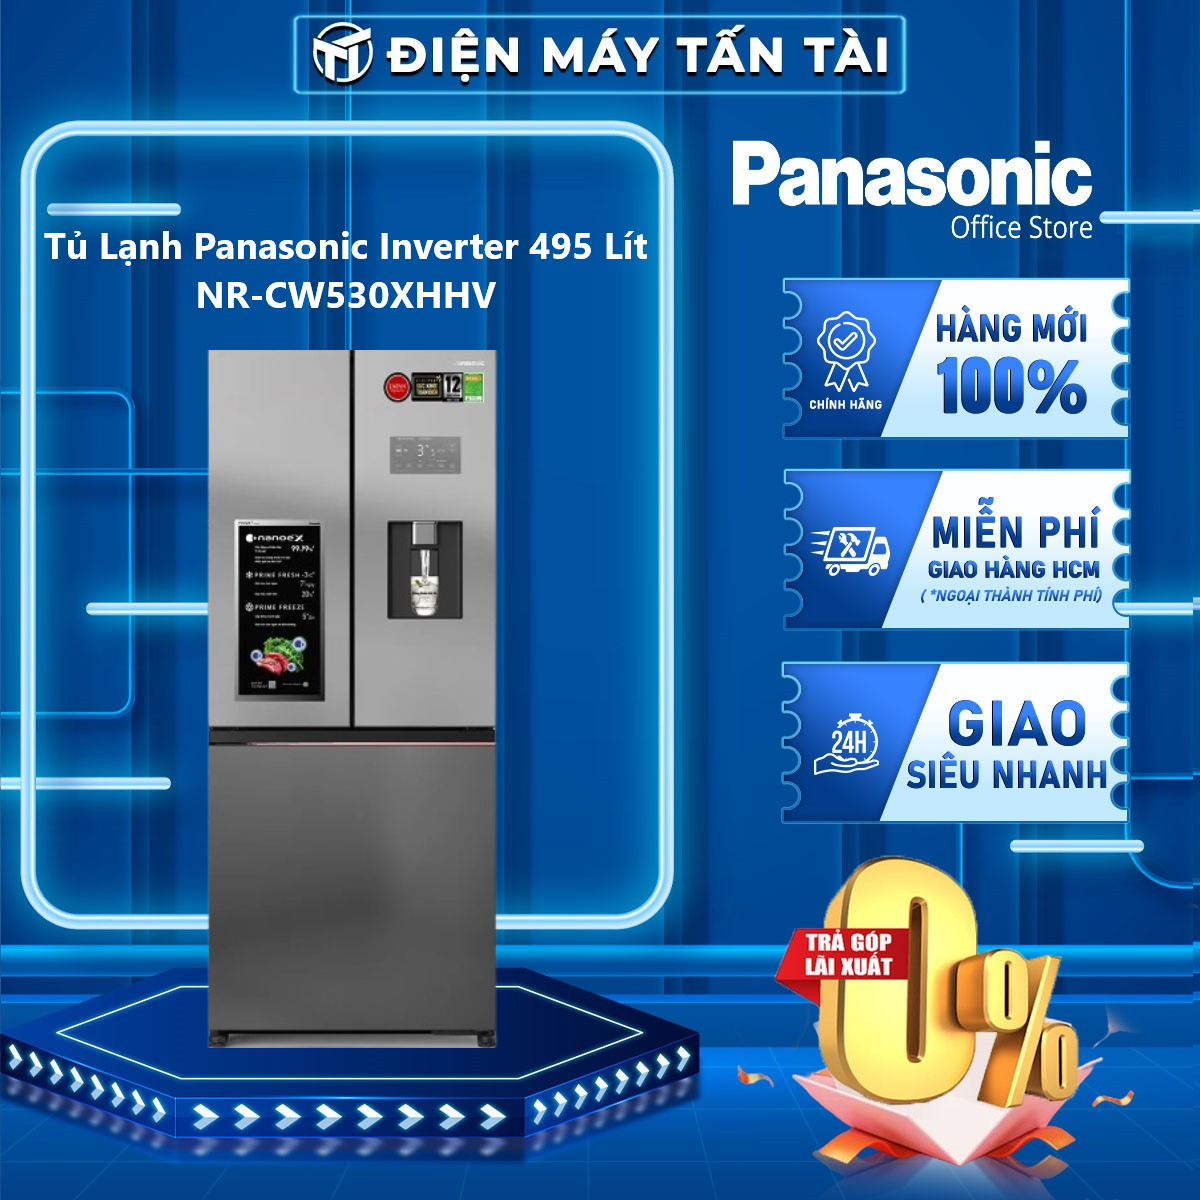 Tủ Lạnh Panasonic Inverter 495 Lít NR-CW530XHHV